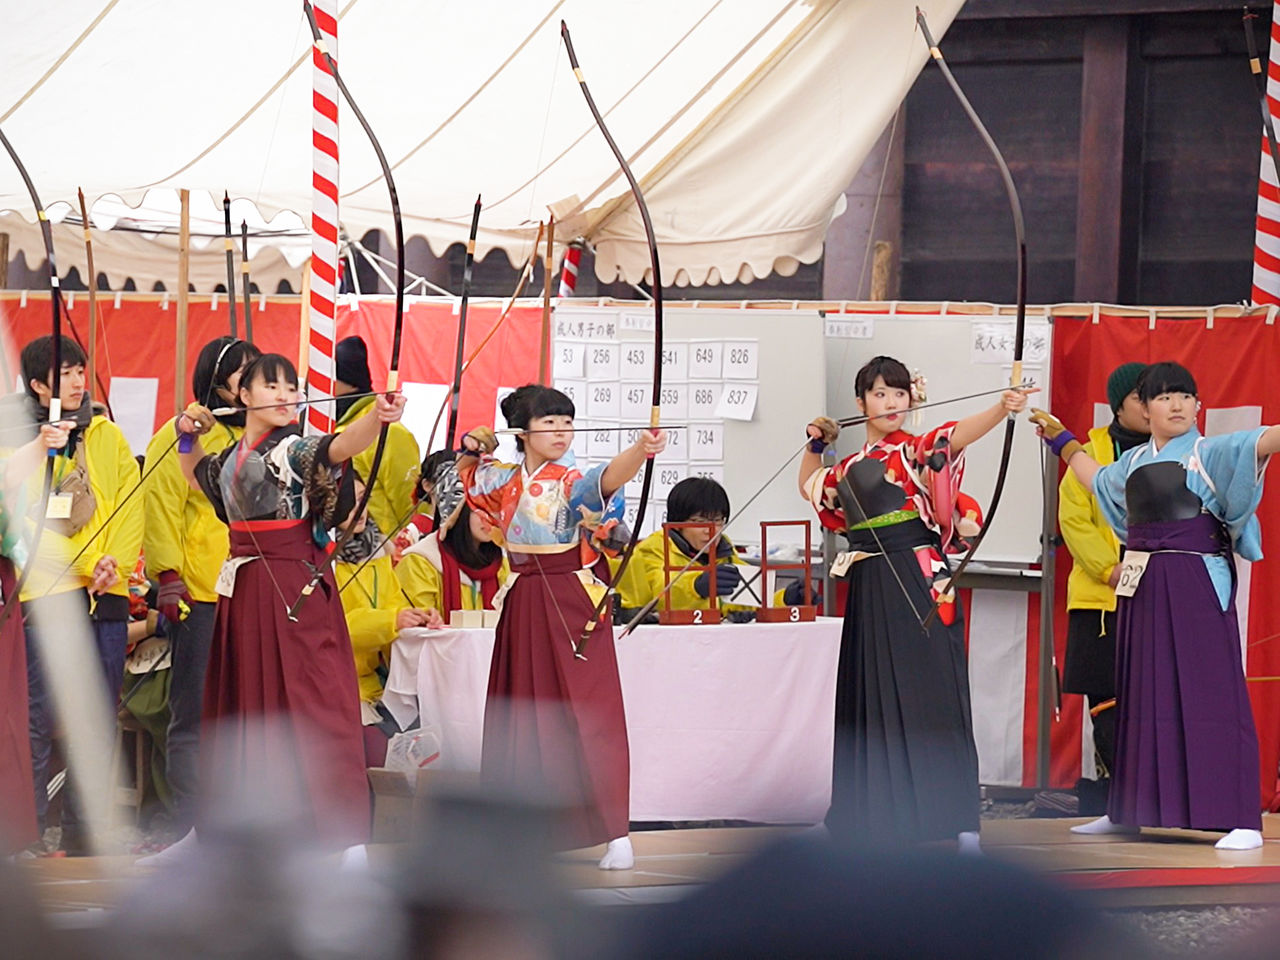 Des jeunes filles, vêtues d’un hakama en forme de jupe-culotte par-dessus leur kimono, tirent à l’arc.